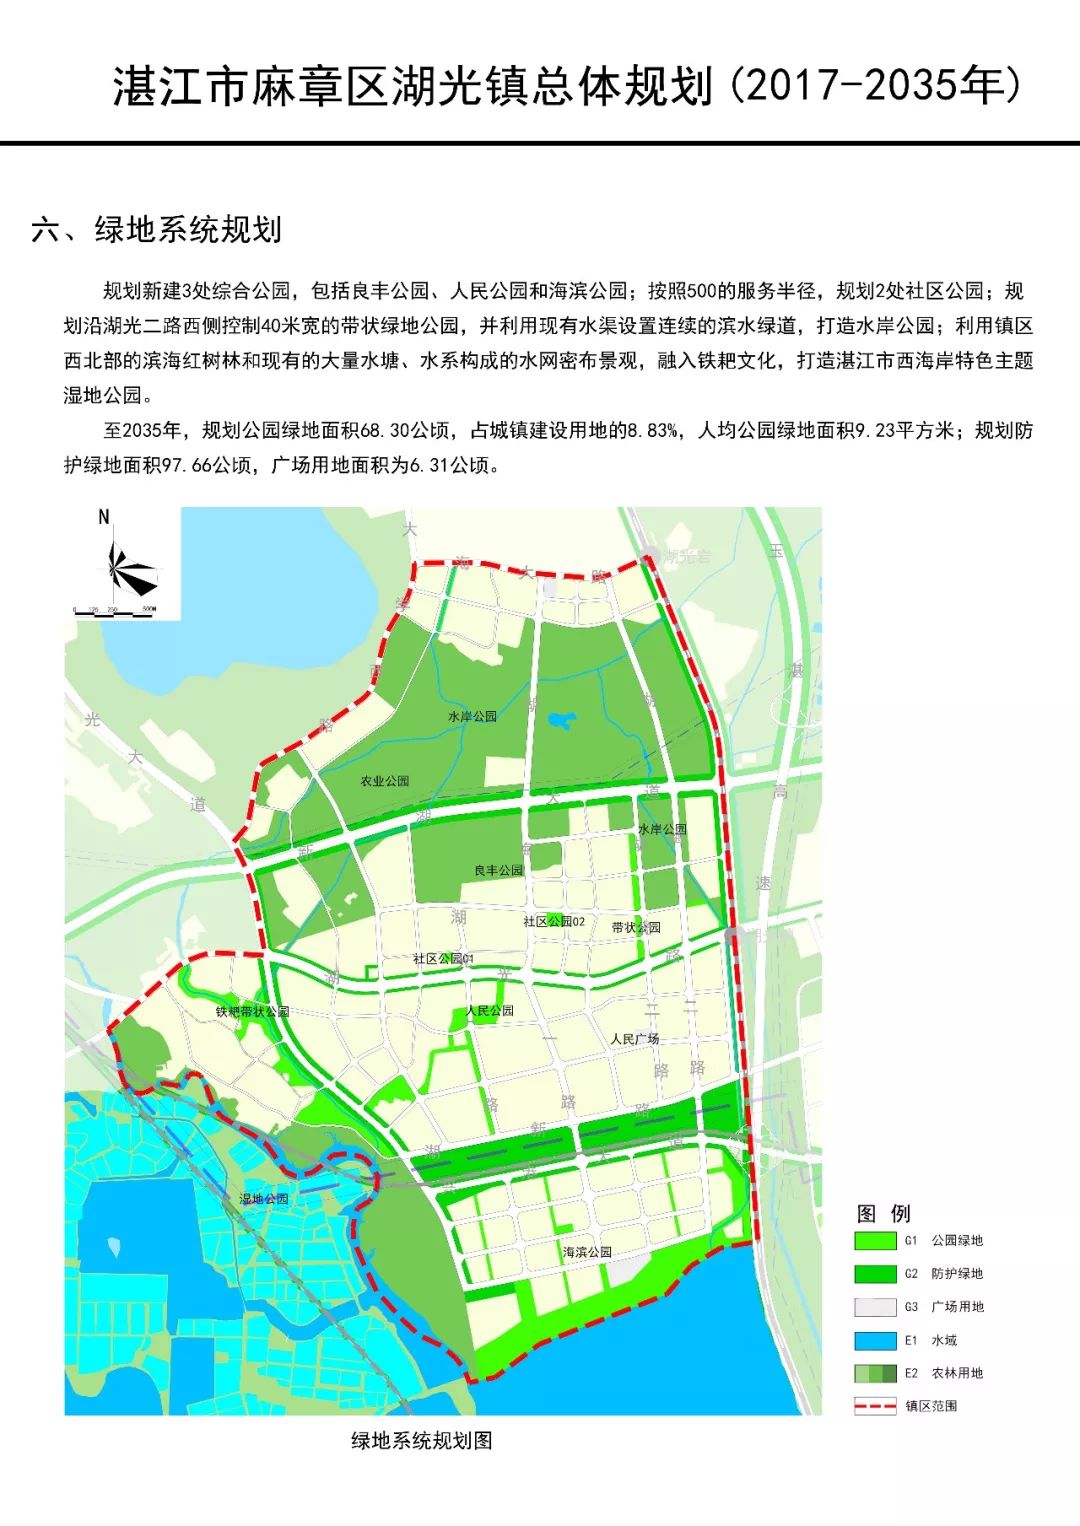 总体规划图公布麻章区湖光镇将建国家级特色观光旅游名镇